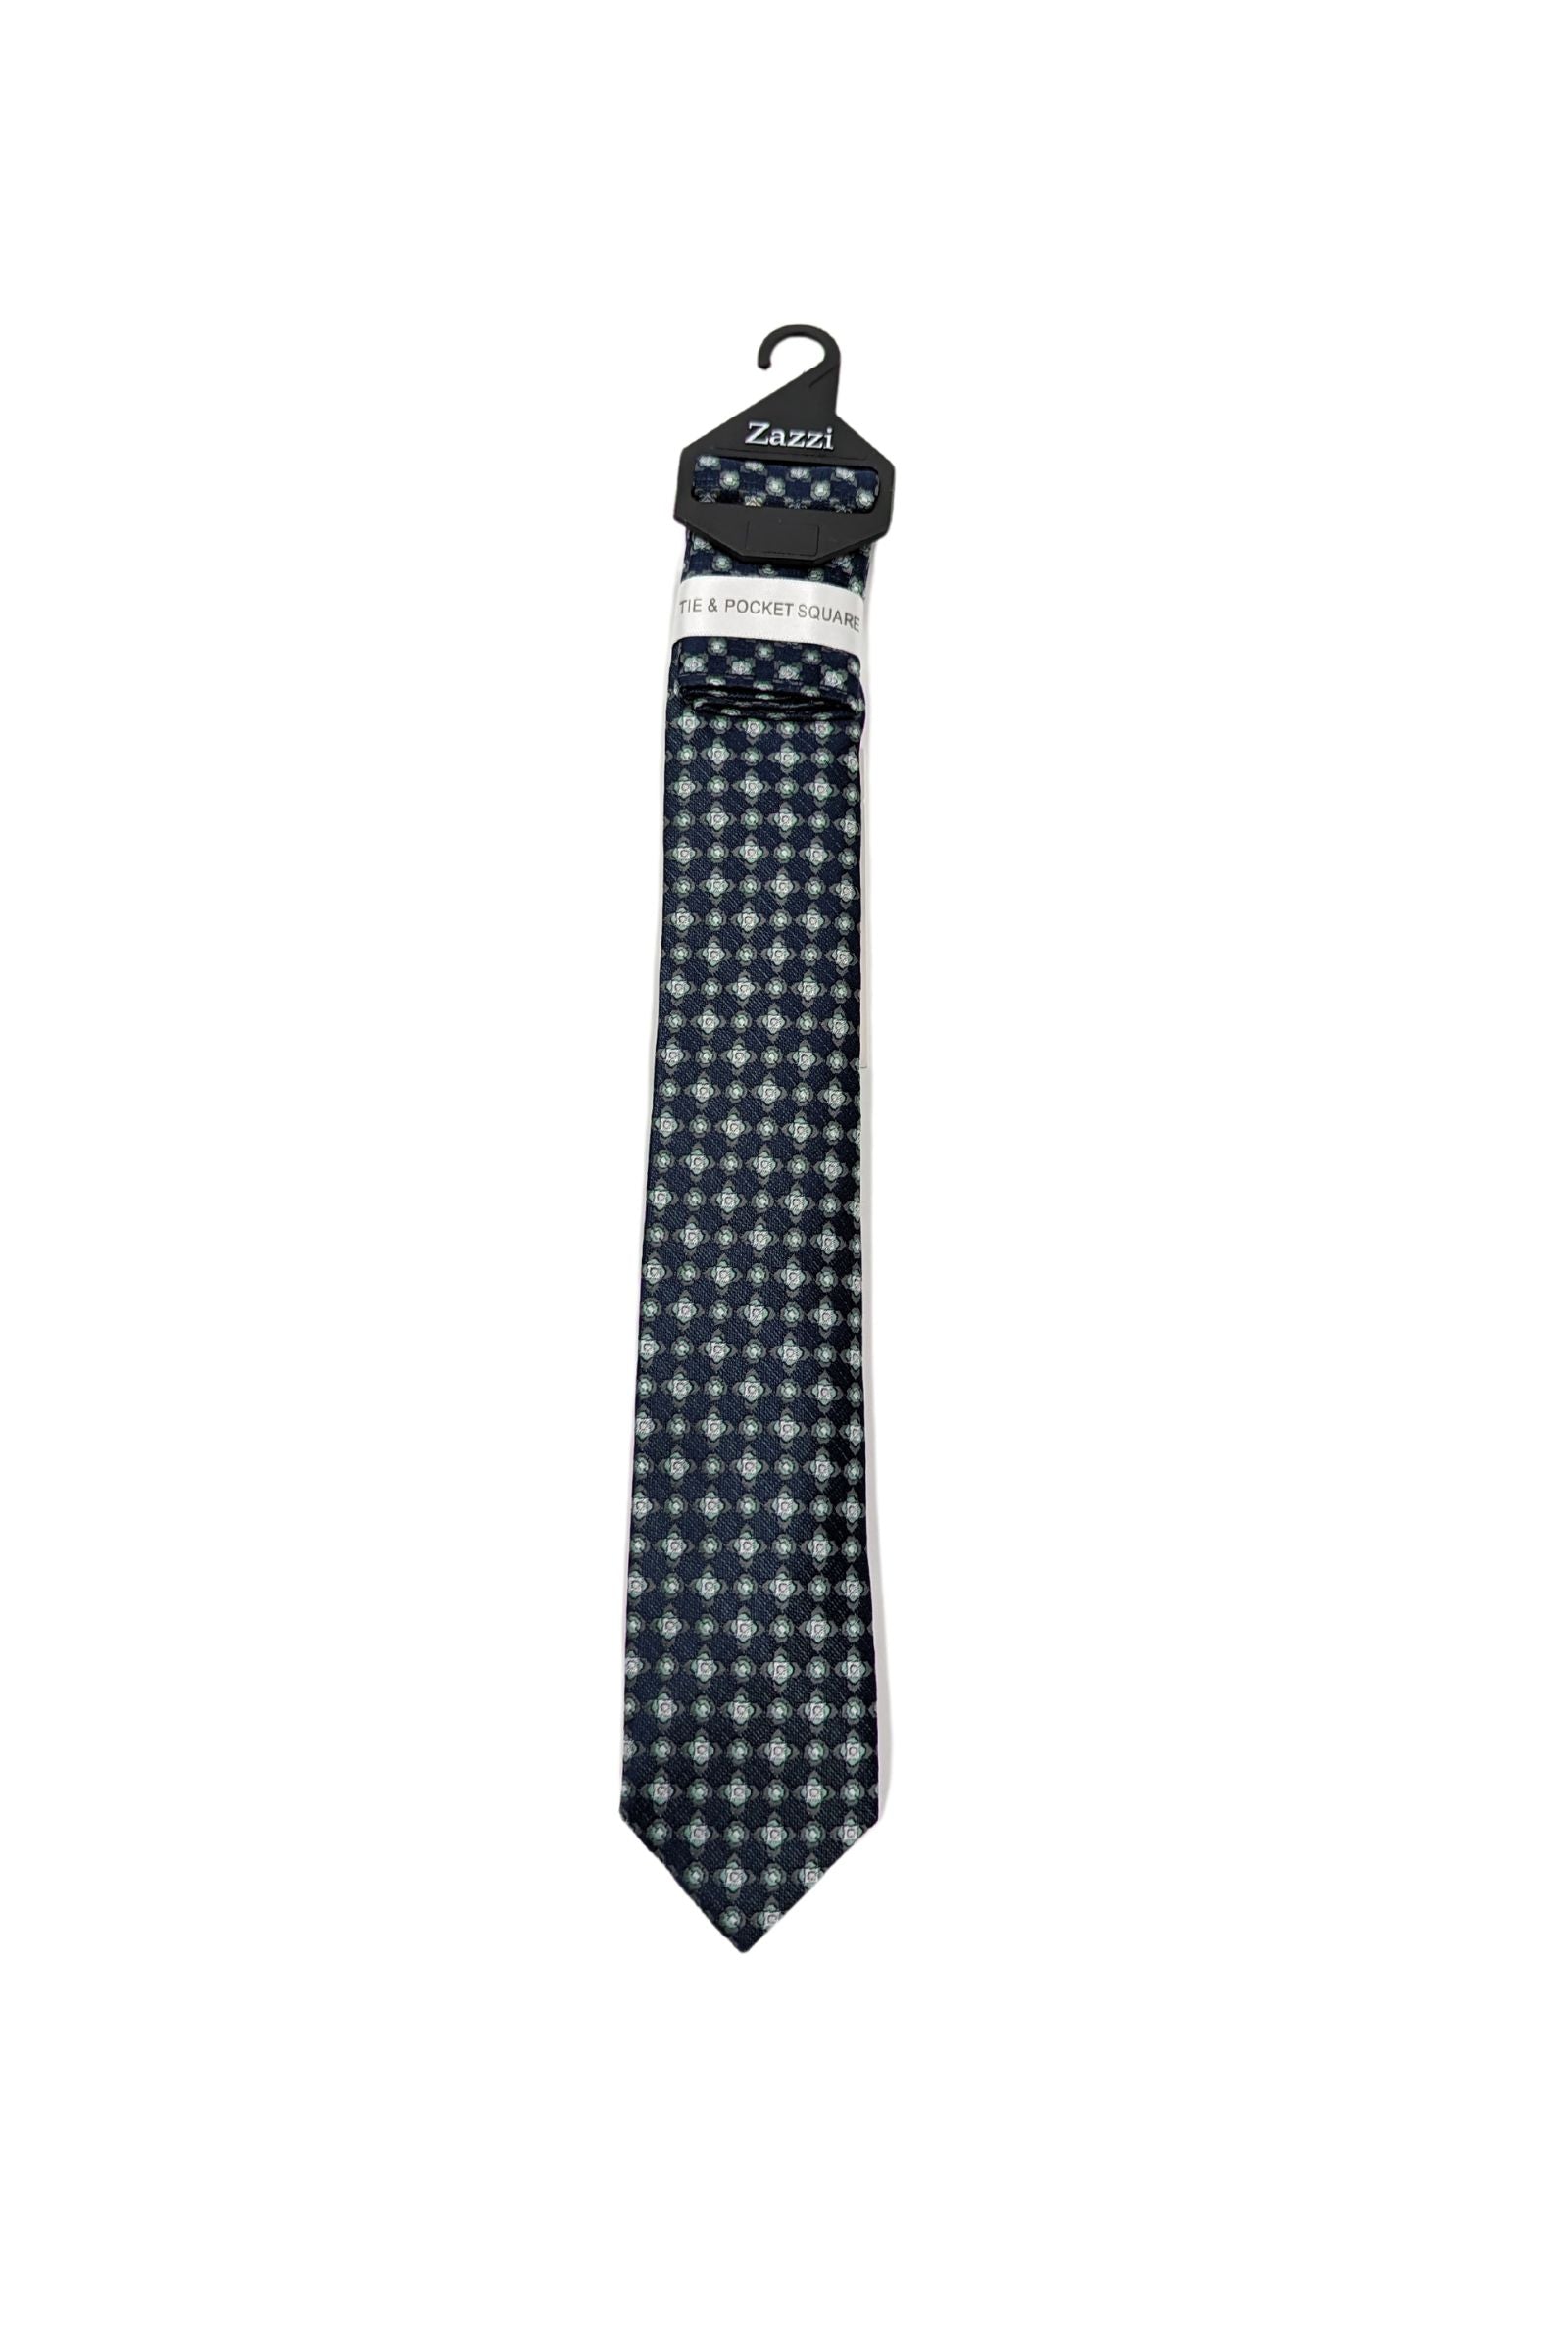 Mint/Navy Pattern Boys Tie & Pocket Square